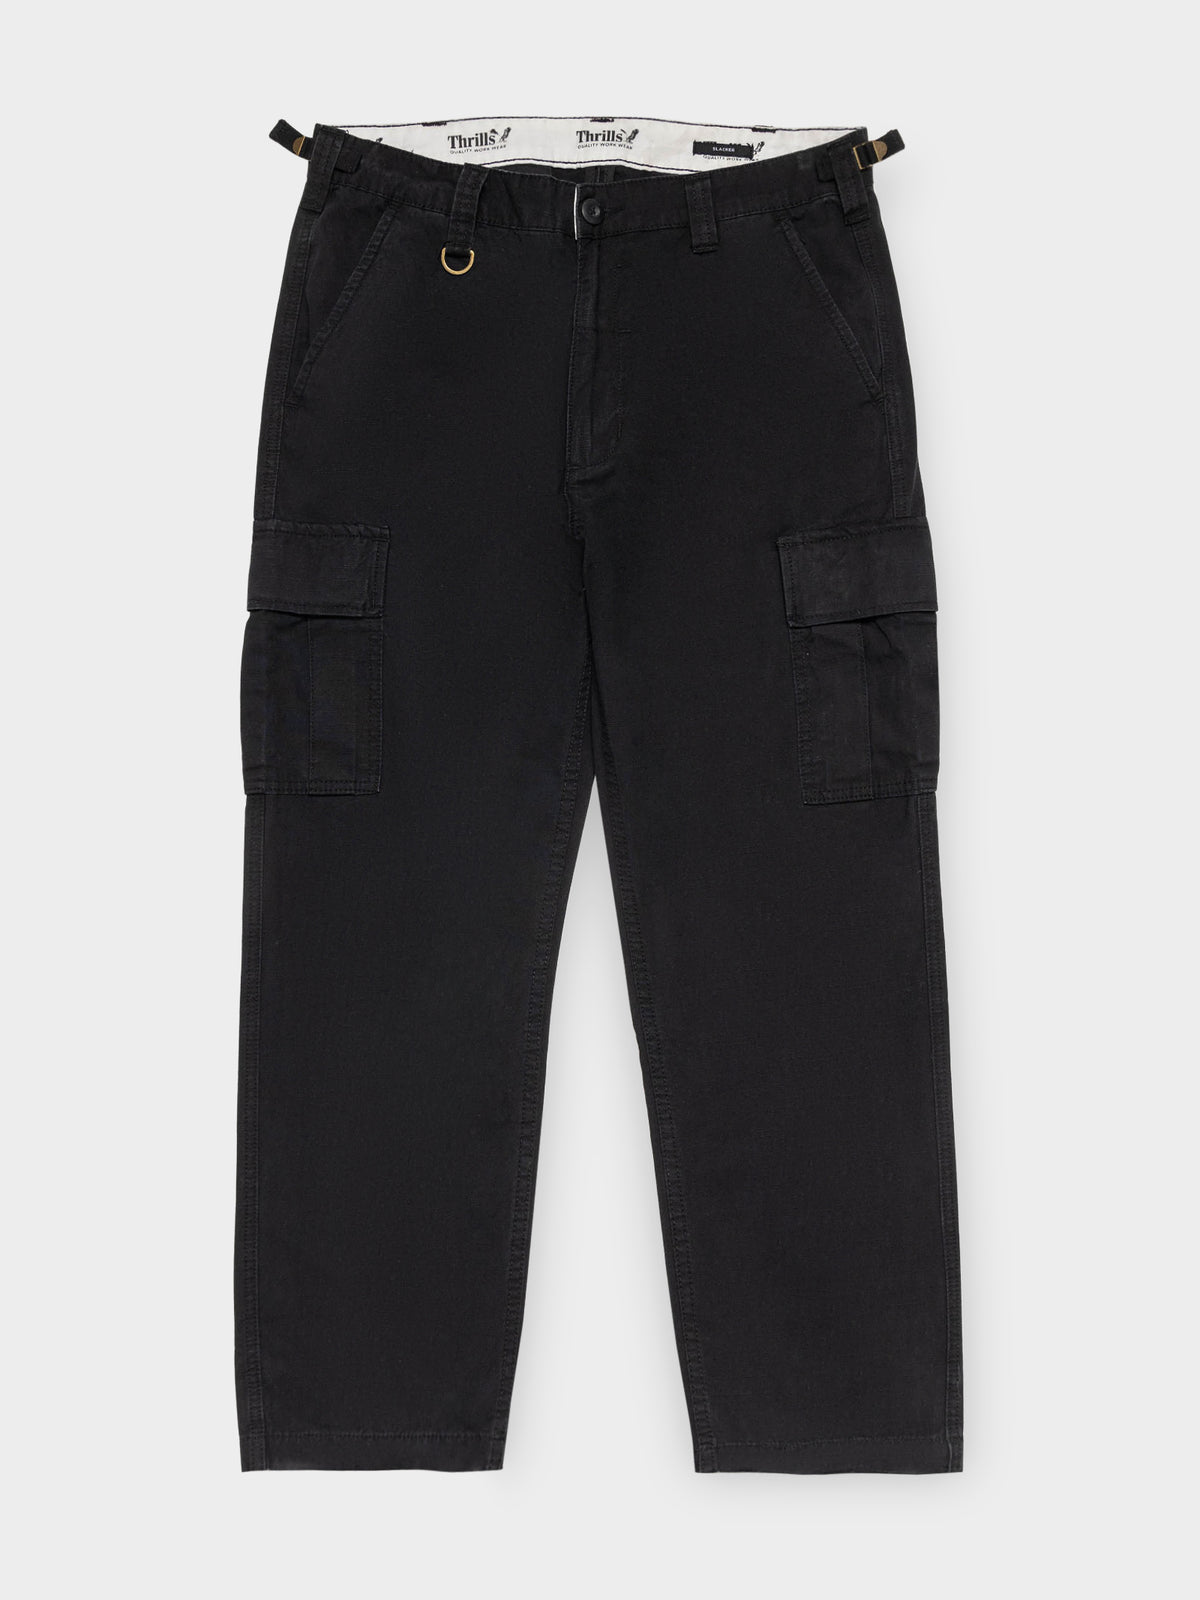 Union Slacker Cargo Pants in Black